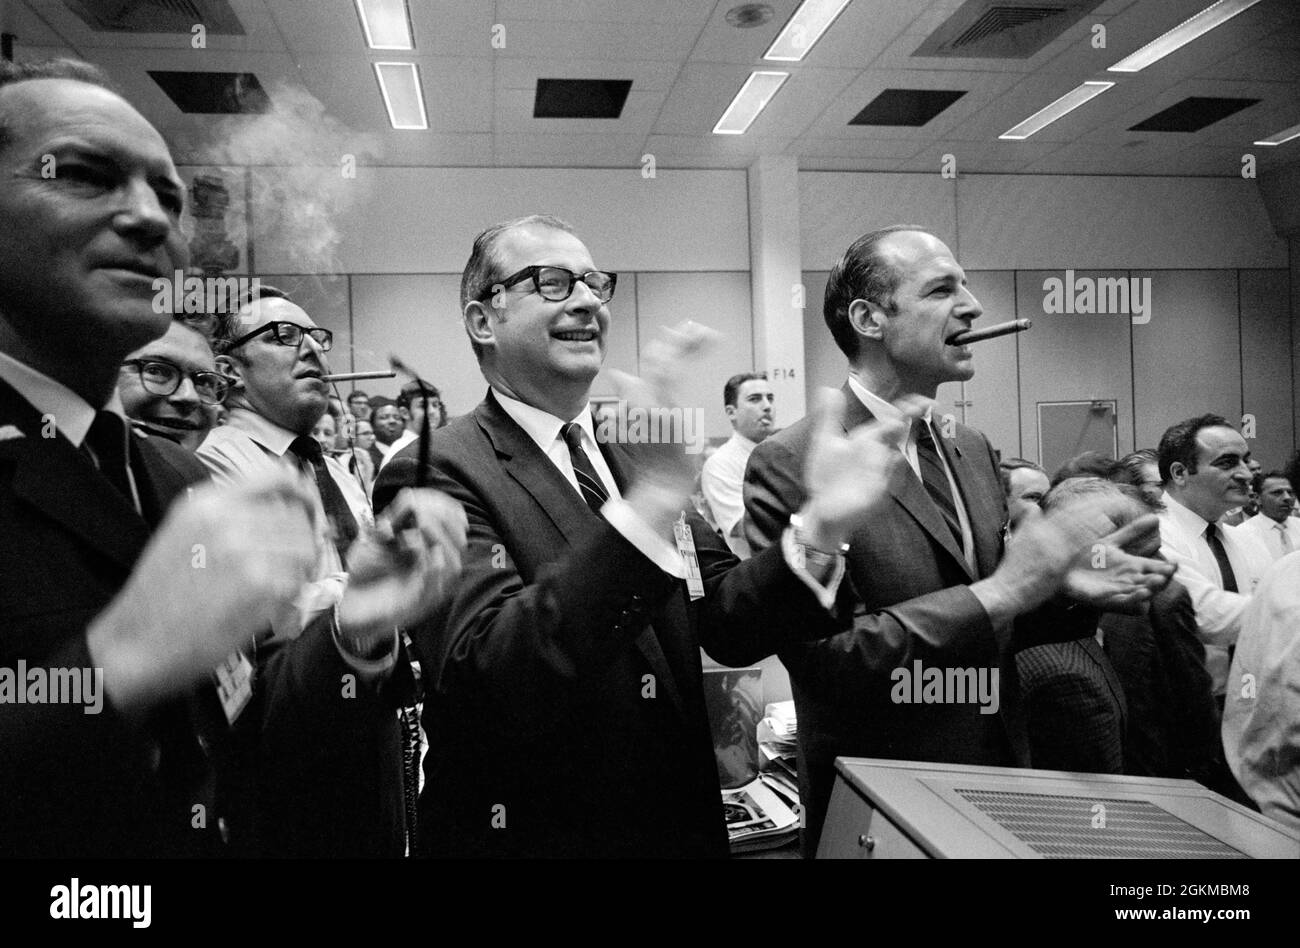 (17 avril 1970) --- des membres du personnel du siège social de la NASA (QG de la NASA), du centre spatial habité (MSC) et du Dr Thomas Paine (centre du cadre) applaudissent le succès de la mission Apollo 13 tandis que le Dr George Low fume un cigare (à droite), dans le Centre de contrôle de mission (MCC) du SMC, situé dans le bâtiment 30. Apollo 13 membres d'équipage, astronautes James A. Lovell Jr., commandant; John L. Swigert Jr., pilote du module de commandement; et Fred W. Haise Jr., pilote du module lunaire, ont été éclatés à 12 h 07 44 (CST), le 17 avril 1970, dans l'océan Pacifique Sud. Banque D'Images